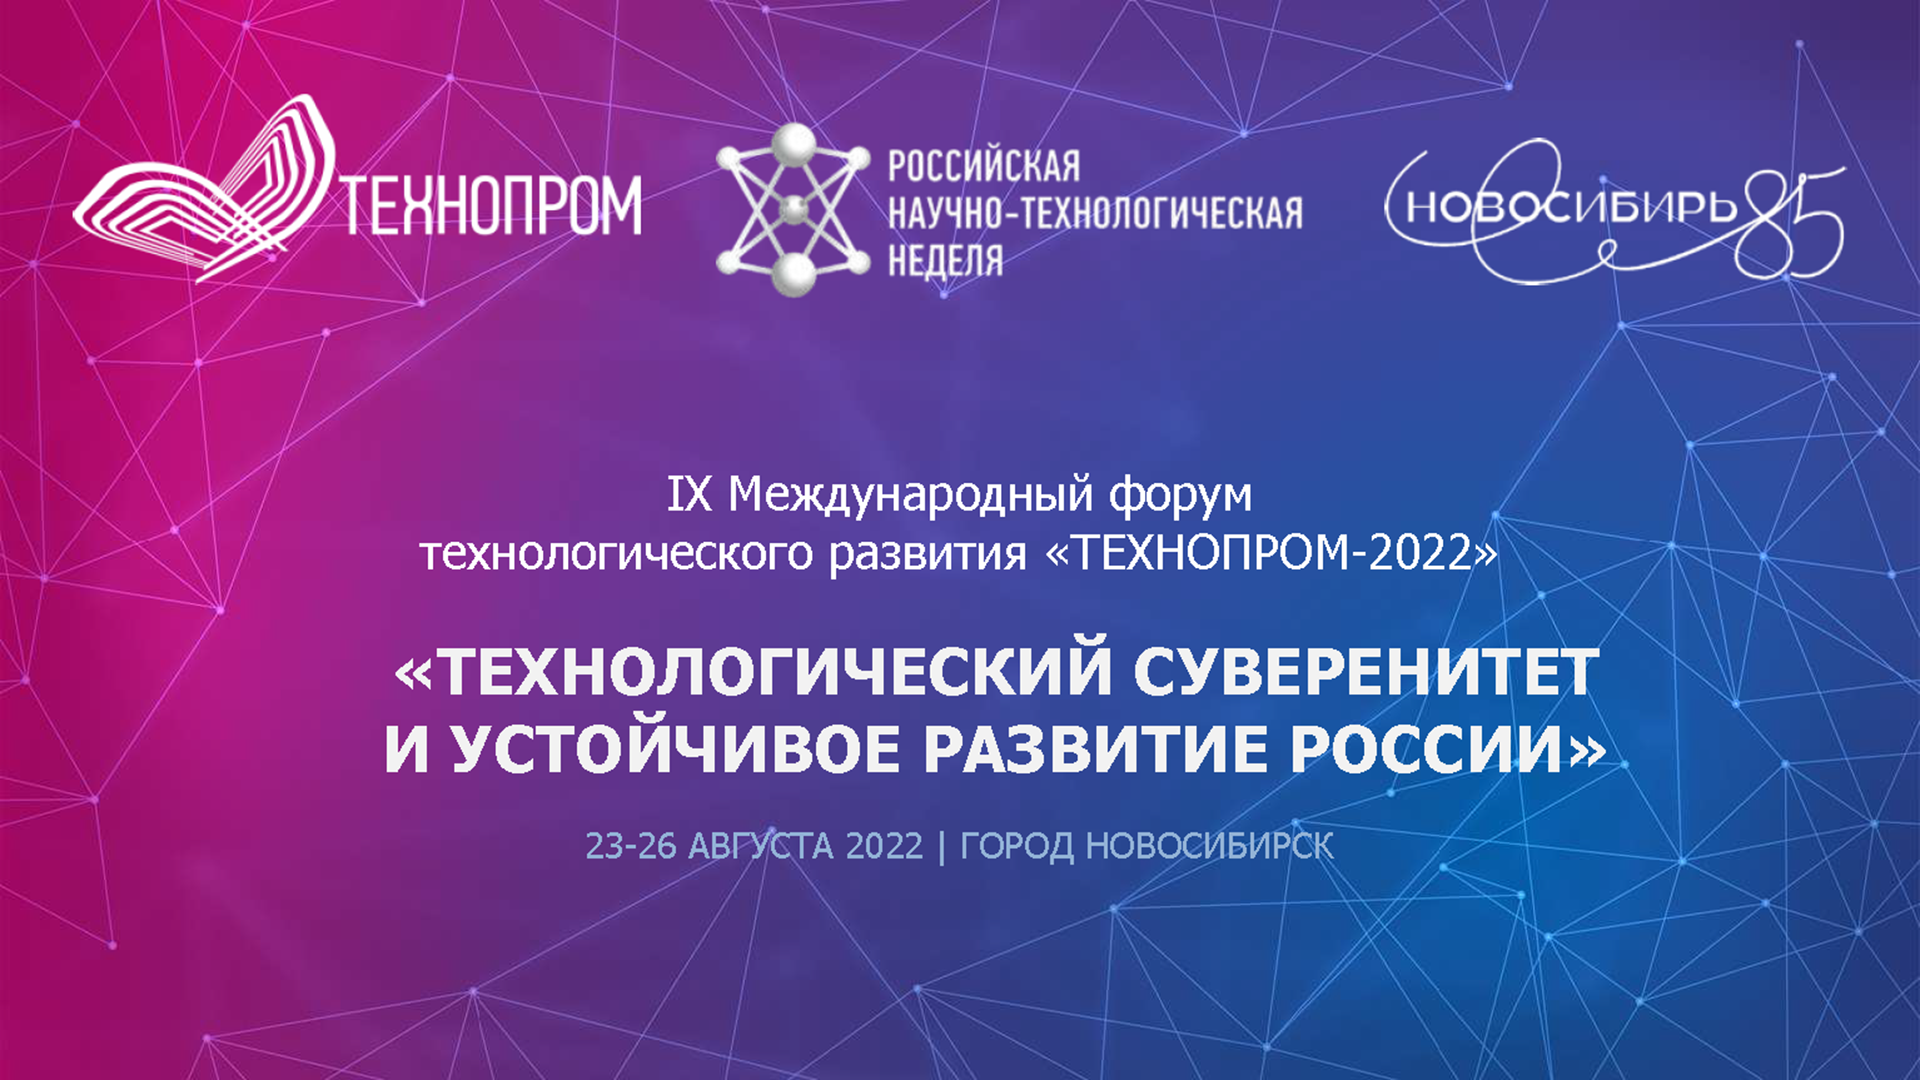 IX Международный форум технологического развития «Технопром-2022» пройдет в Новосибирске с 23 по 26 августа в формате Российской научно- технологической недели